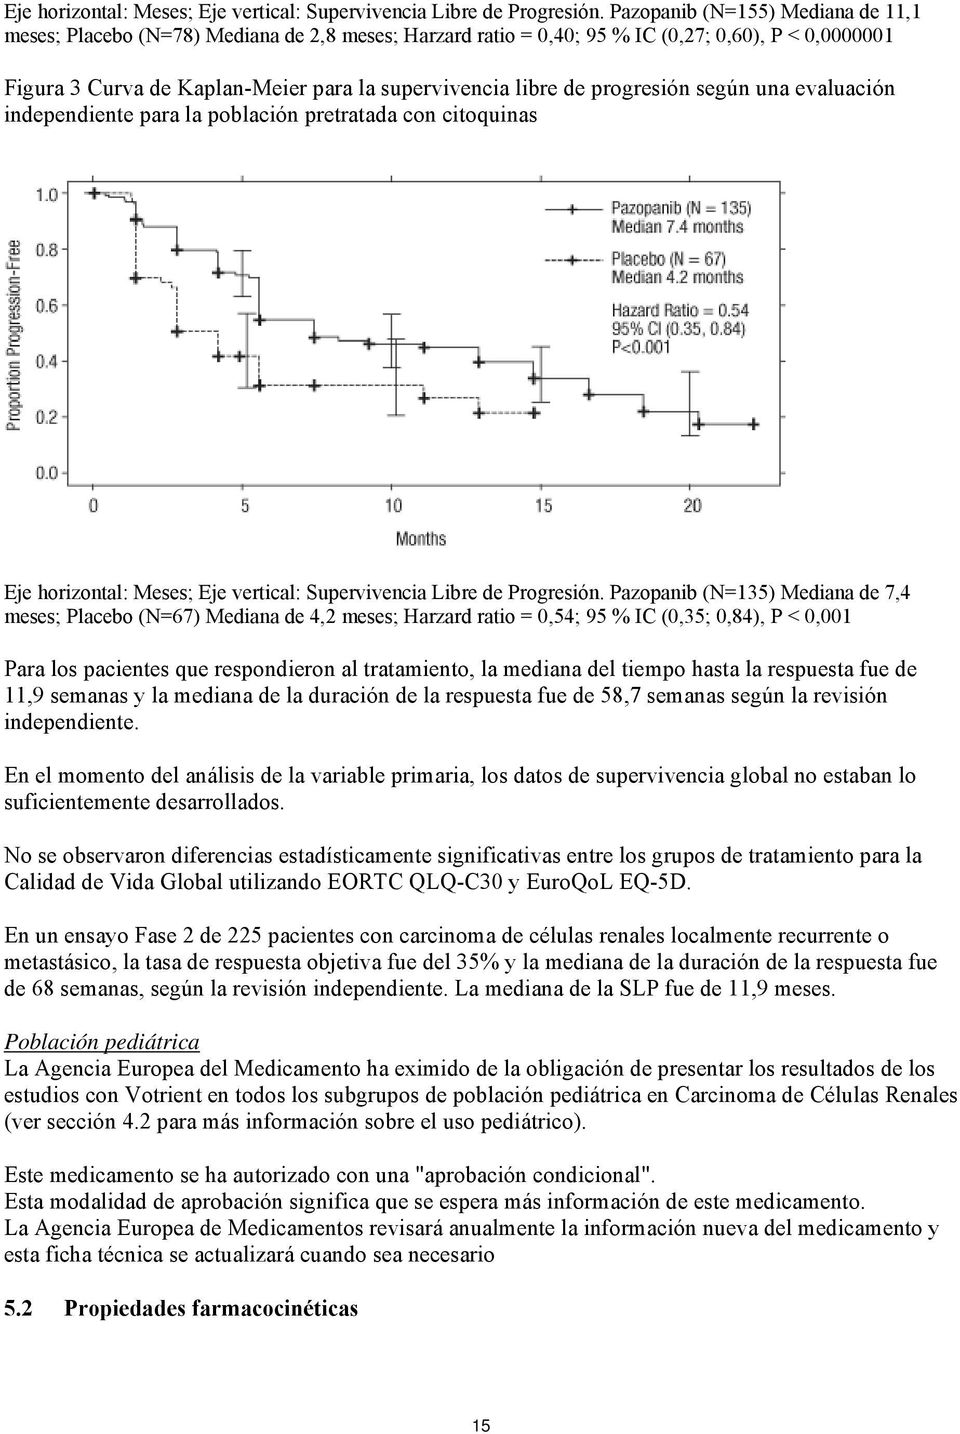 progresión según una evaluación independiente para la población pretratada con citoquinas  Pazopanib (N=135) Mediana de 7,4 meses; Placebo (N=67) Mediana de 4,2 meses; Harzard ratio = 0,54; 95 % IC